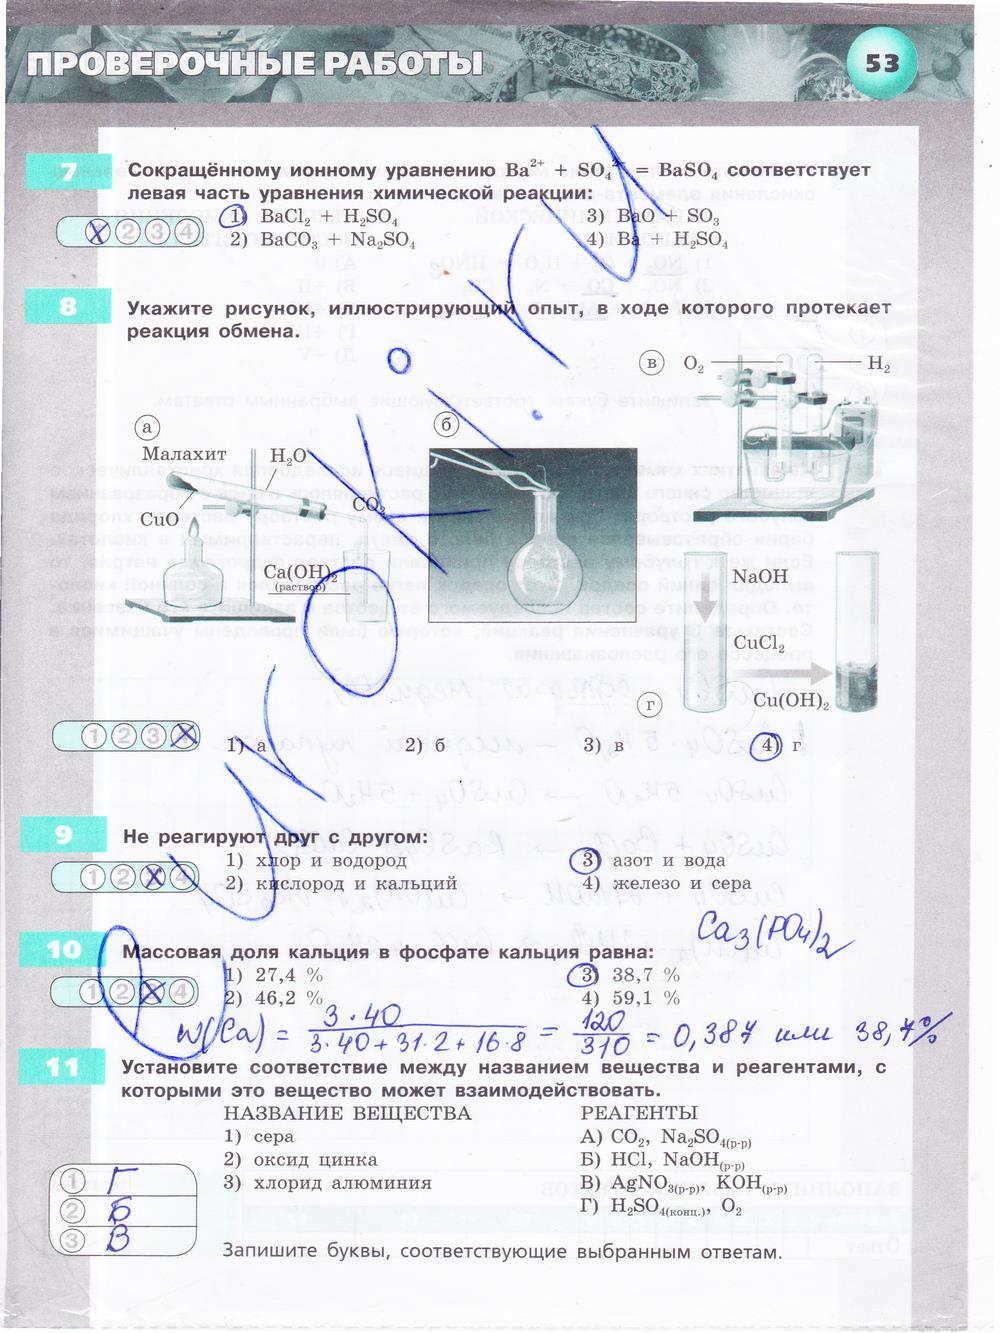 гдз 9 класс тетрадь-экзаменатор страница 53 химия Бобылева, Бирюлина